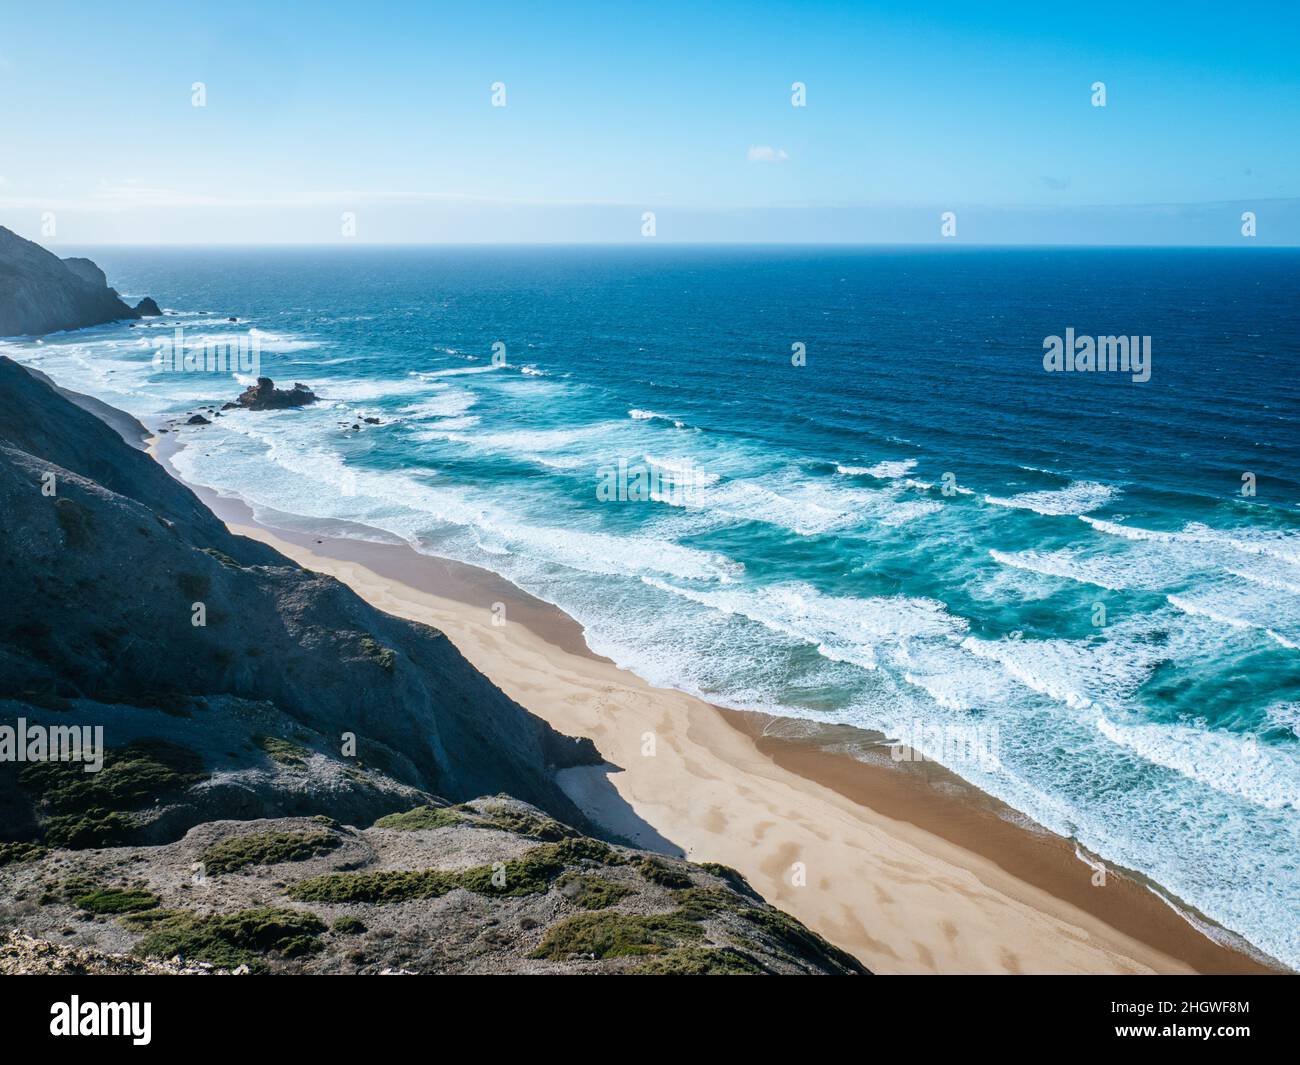 Des vagues turquoise se brisent sur la plage de Praia do Castelejo, dans la région de l'Algarve, au Portugal Banque D'Images